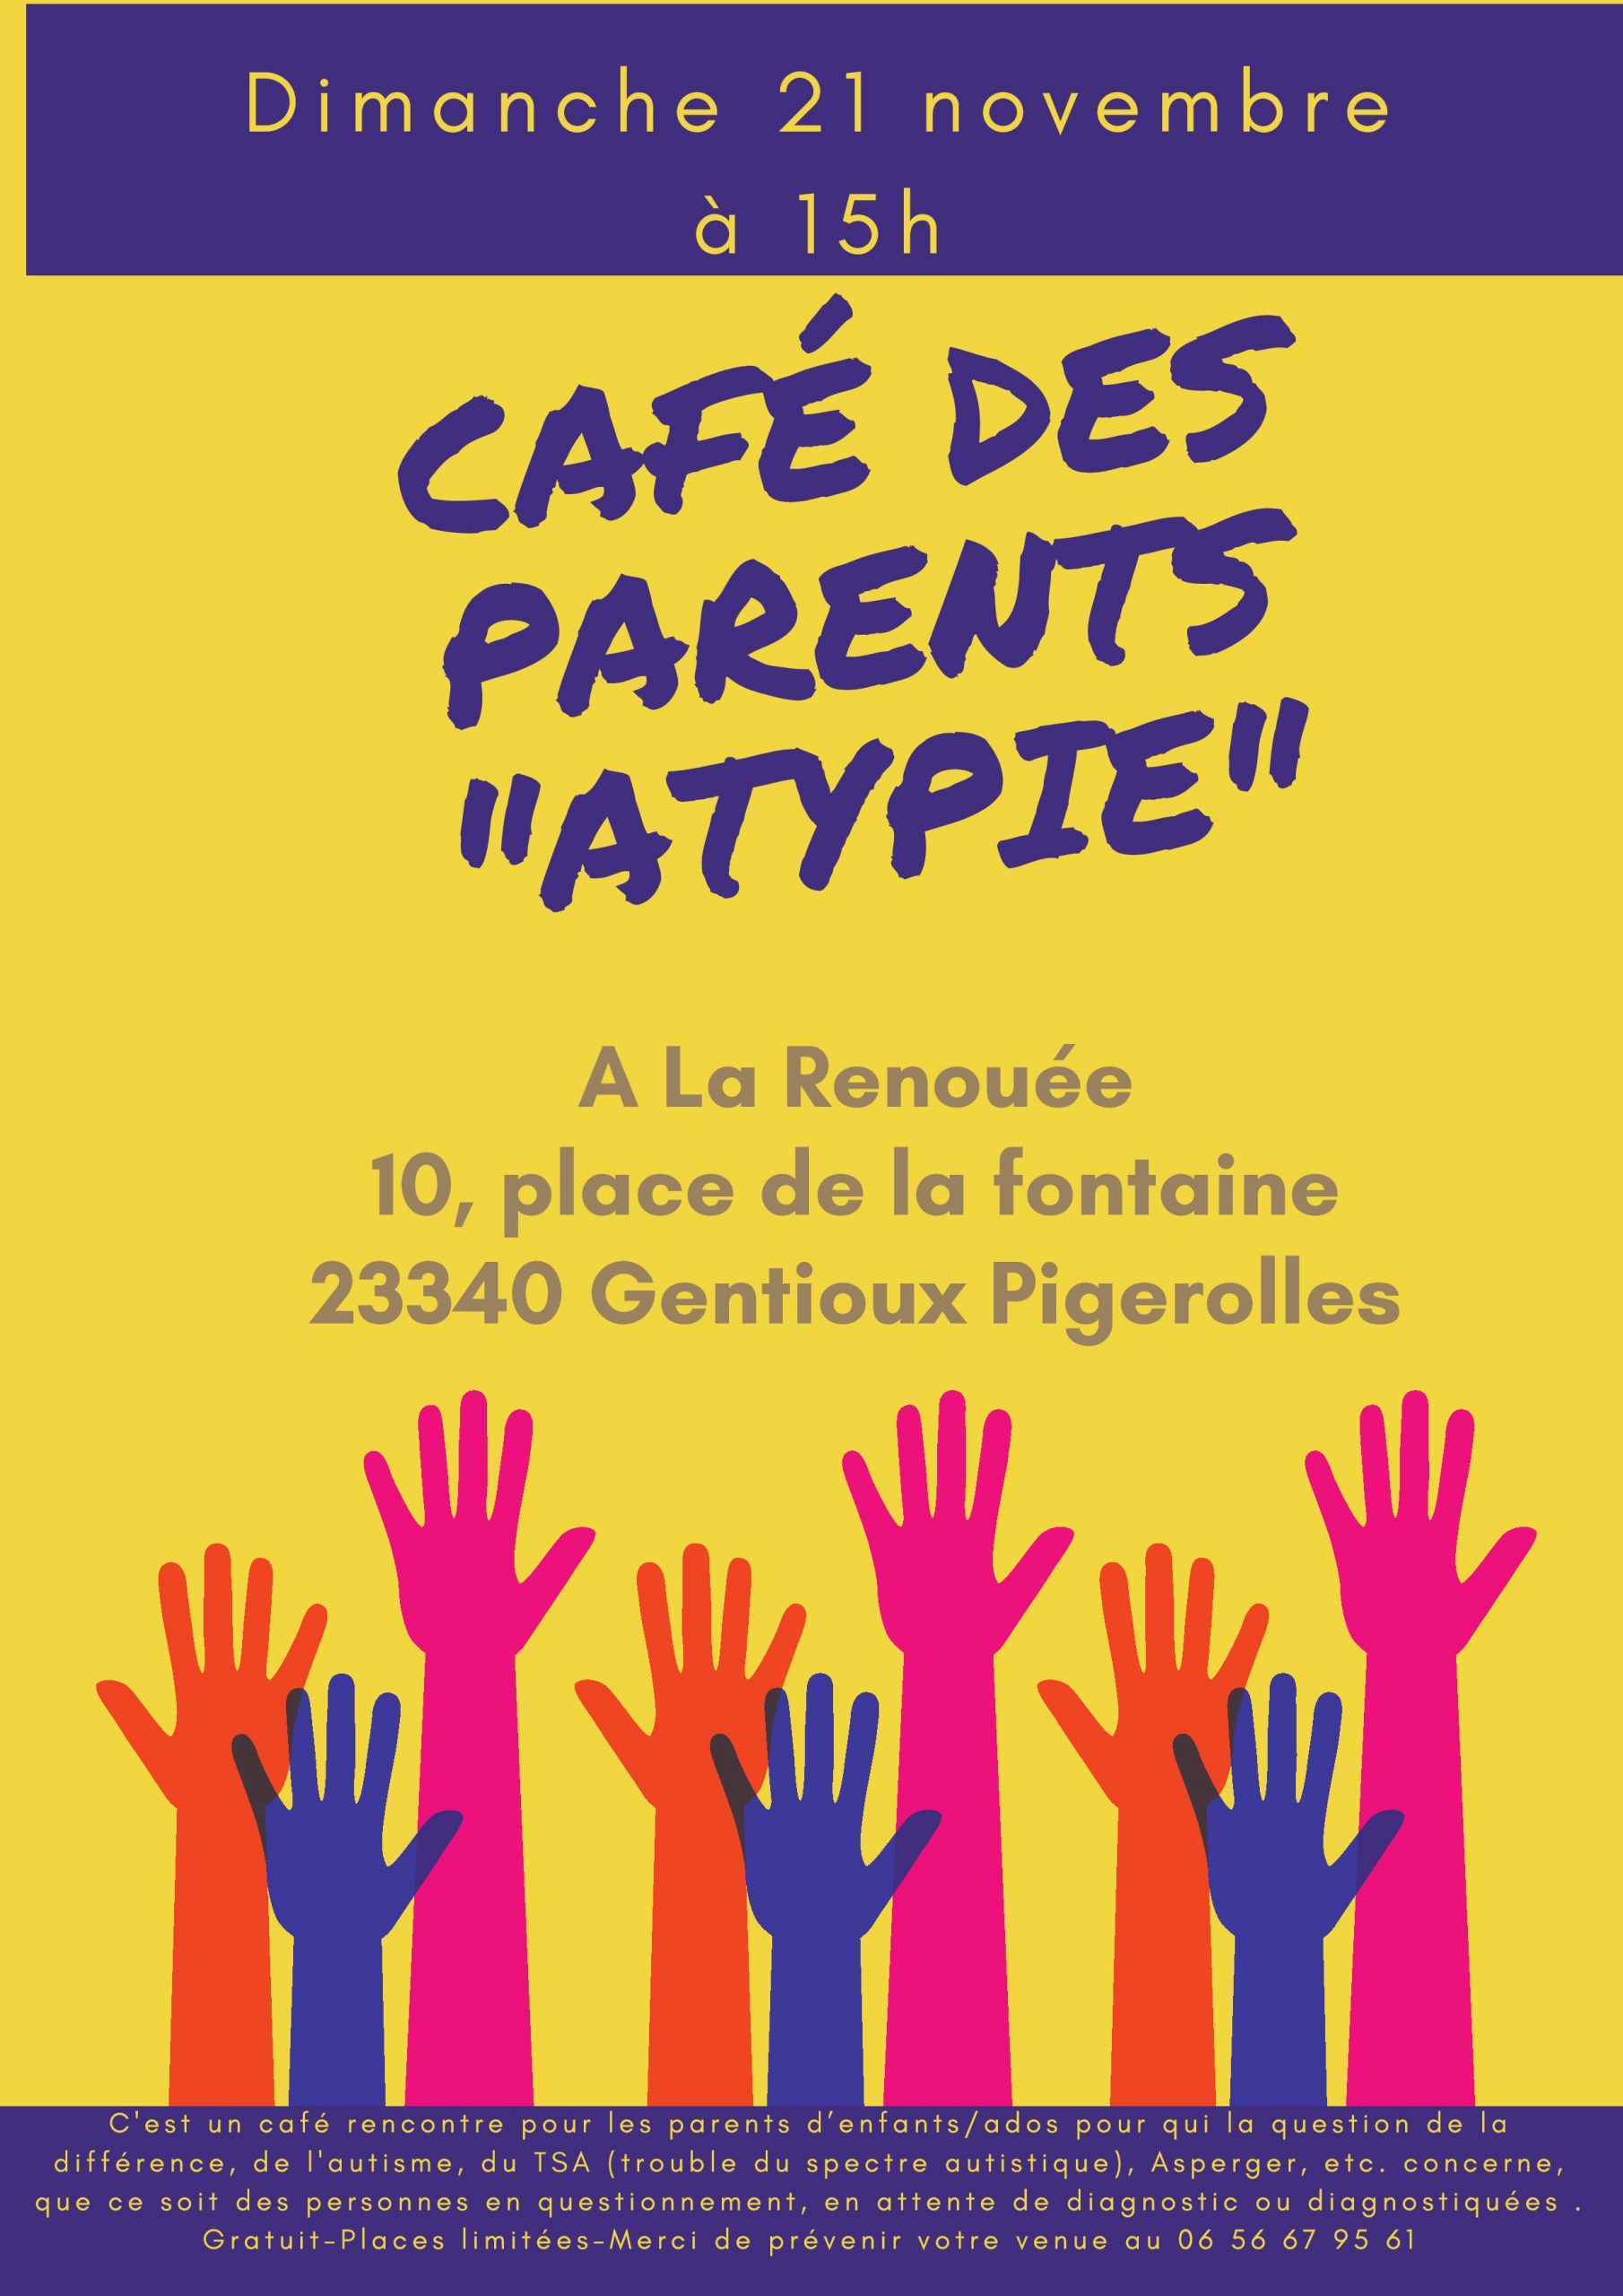 Dimanche 21 novembre à 15h: rencontre café des parents « Atypie »